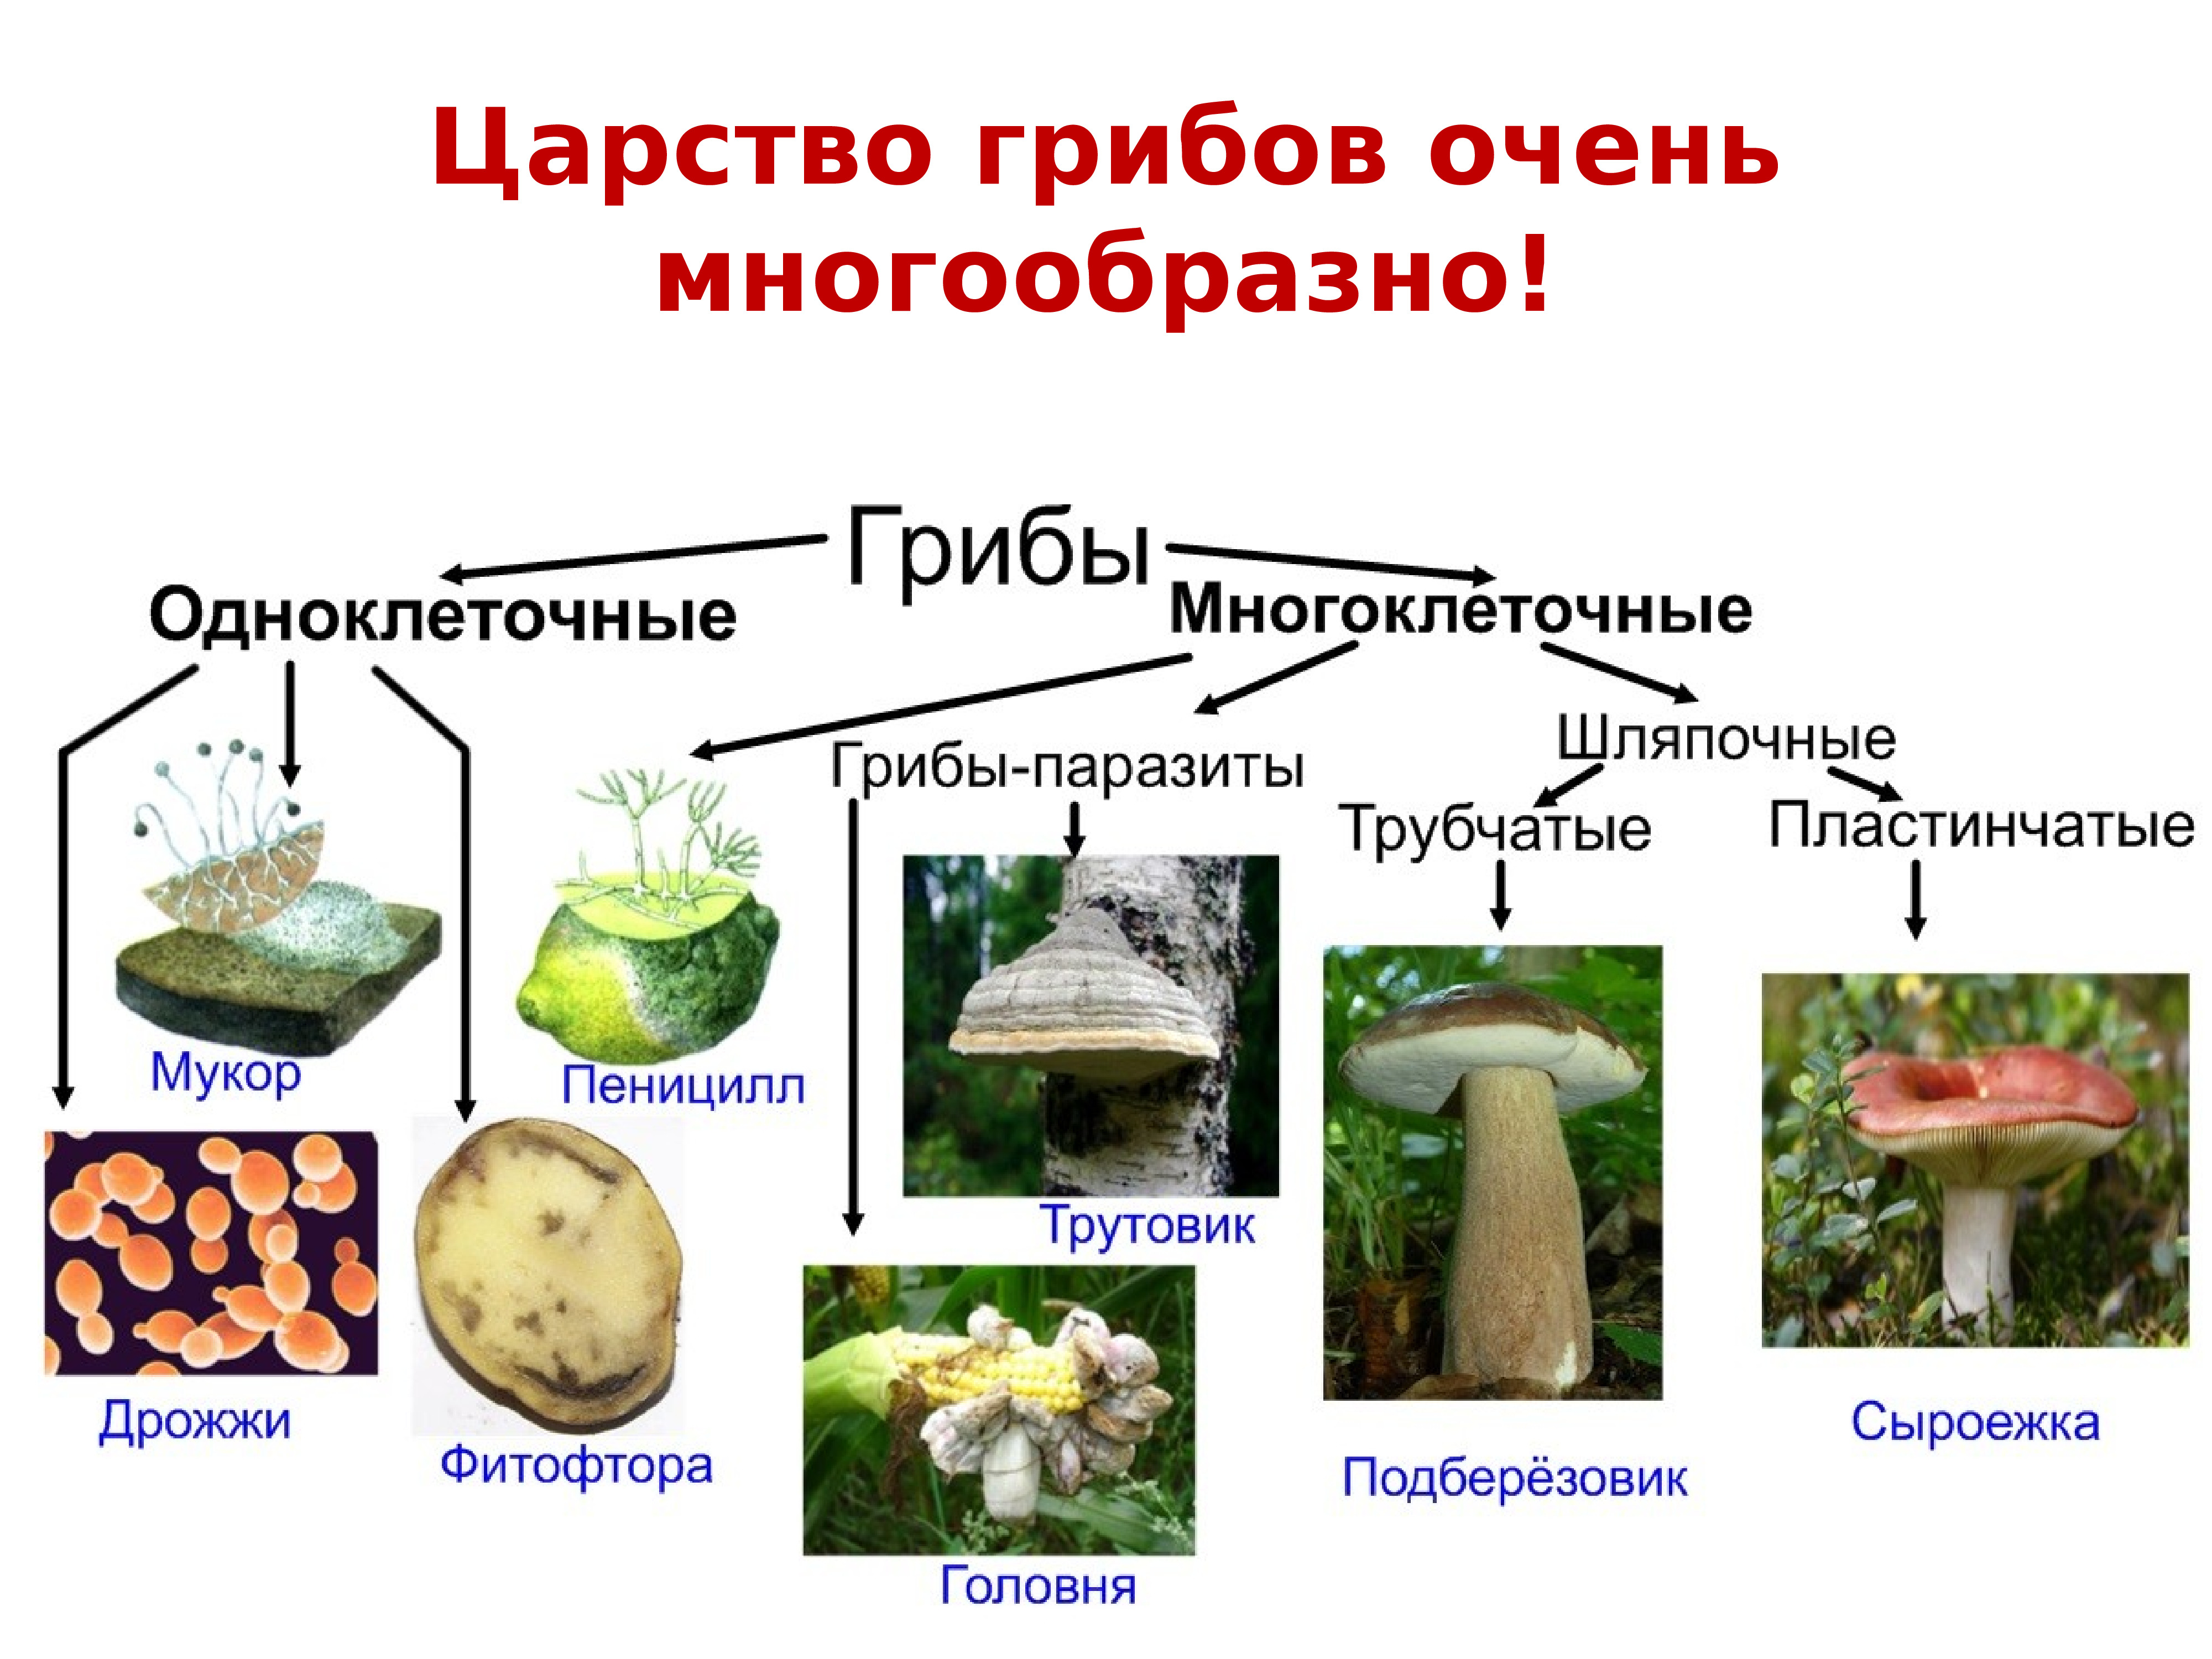 Среди грибов встречаются как одноклеточные